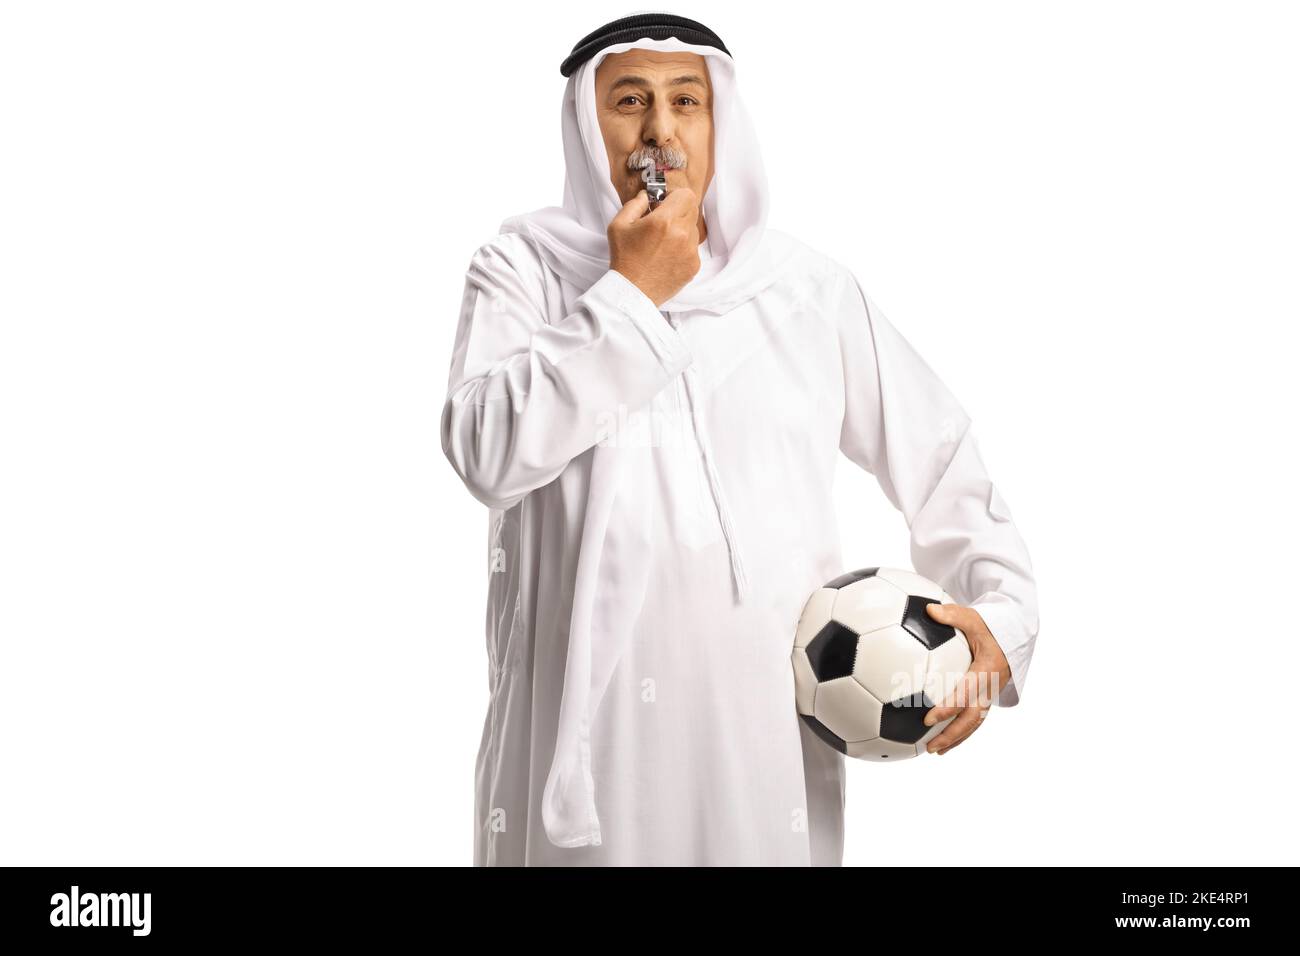 Uomo arabo in abiti etnici che tiene un calcio e soffia un fischio isolato su sfondo bianco Foto Stock